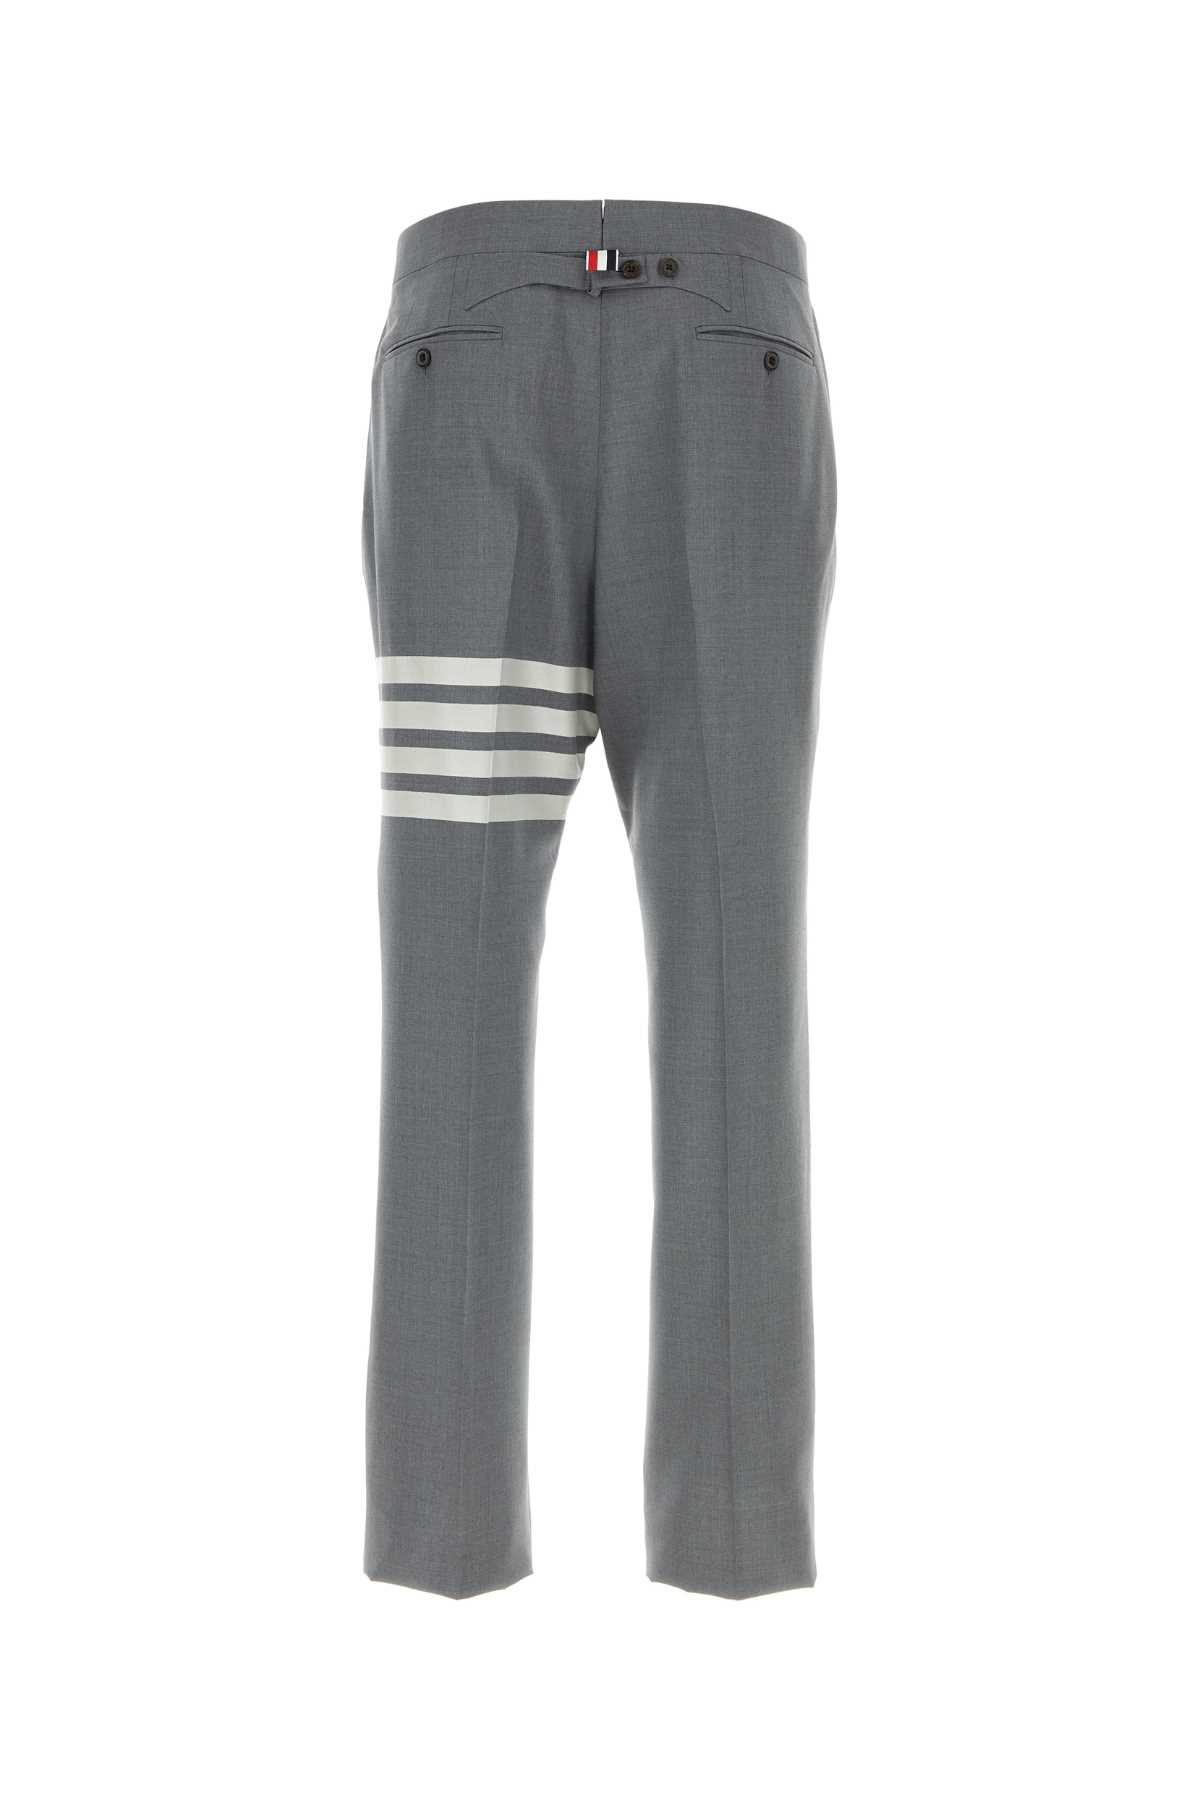 Thom Browne Grey Wool Pant In 035